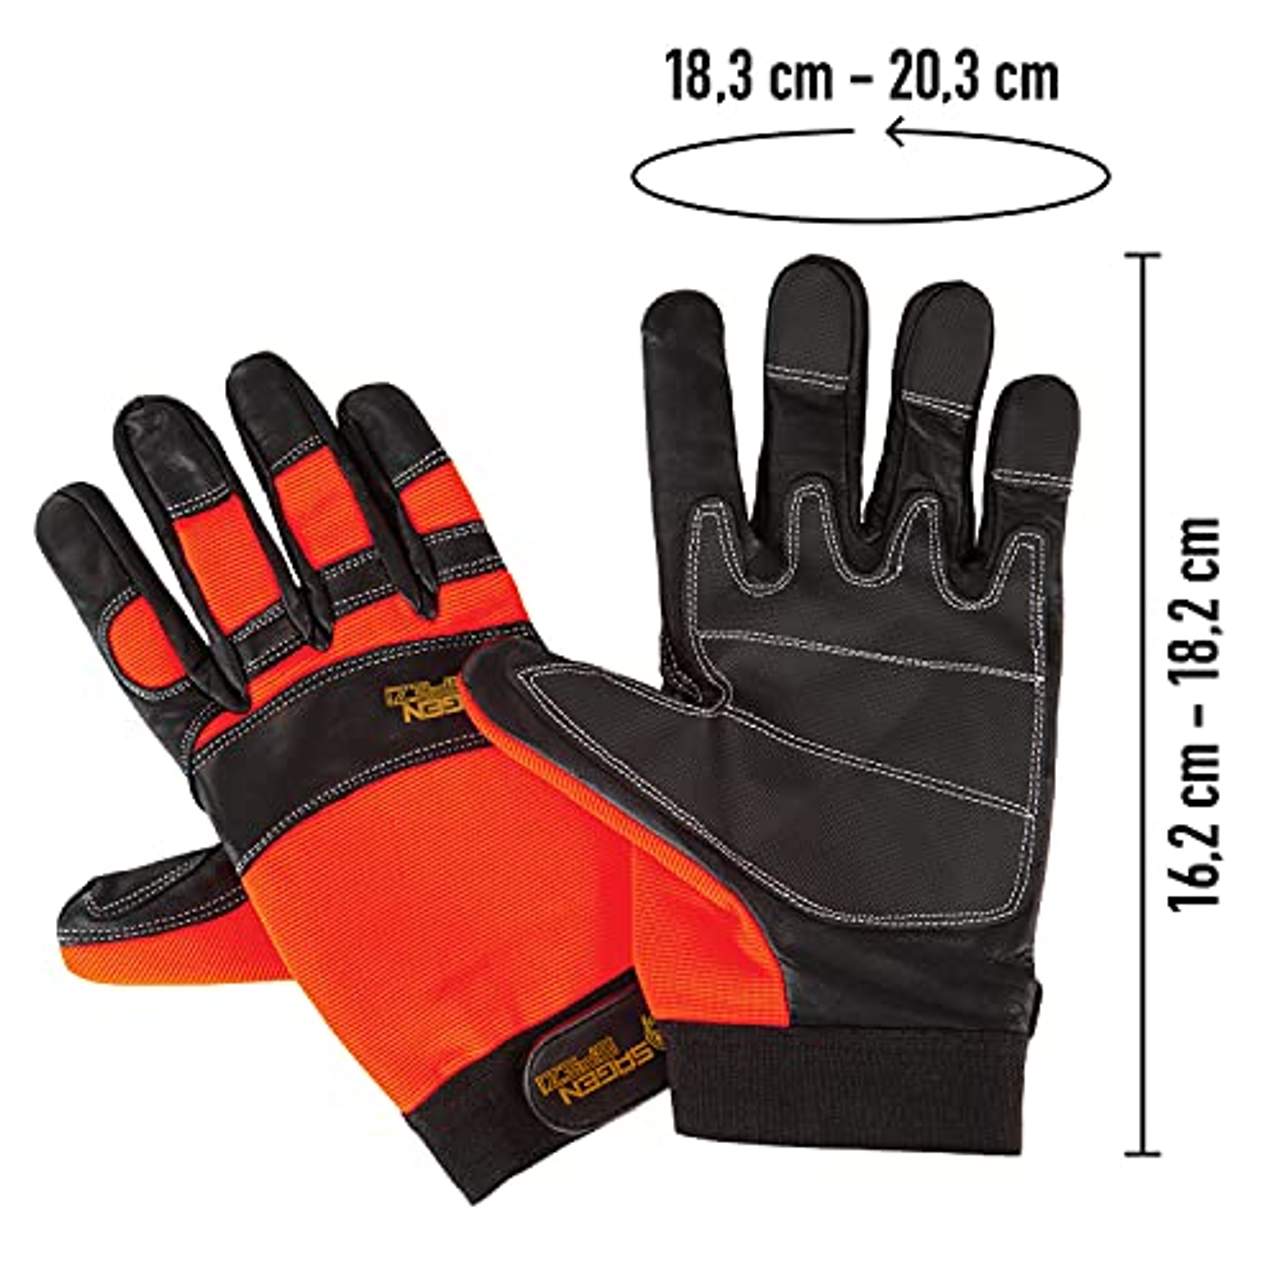 Sägenspezi Schnittschutz Sägenspezi Handschuhe Größe XL